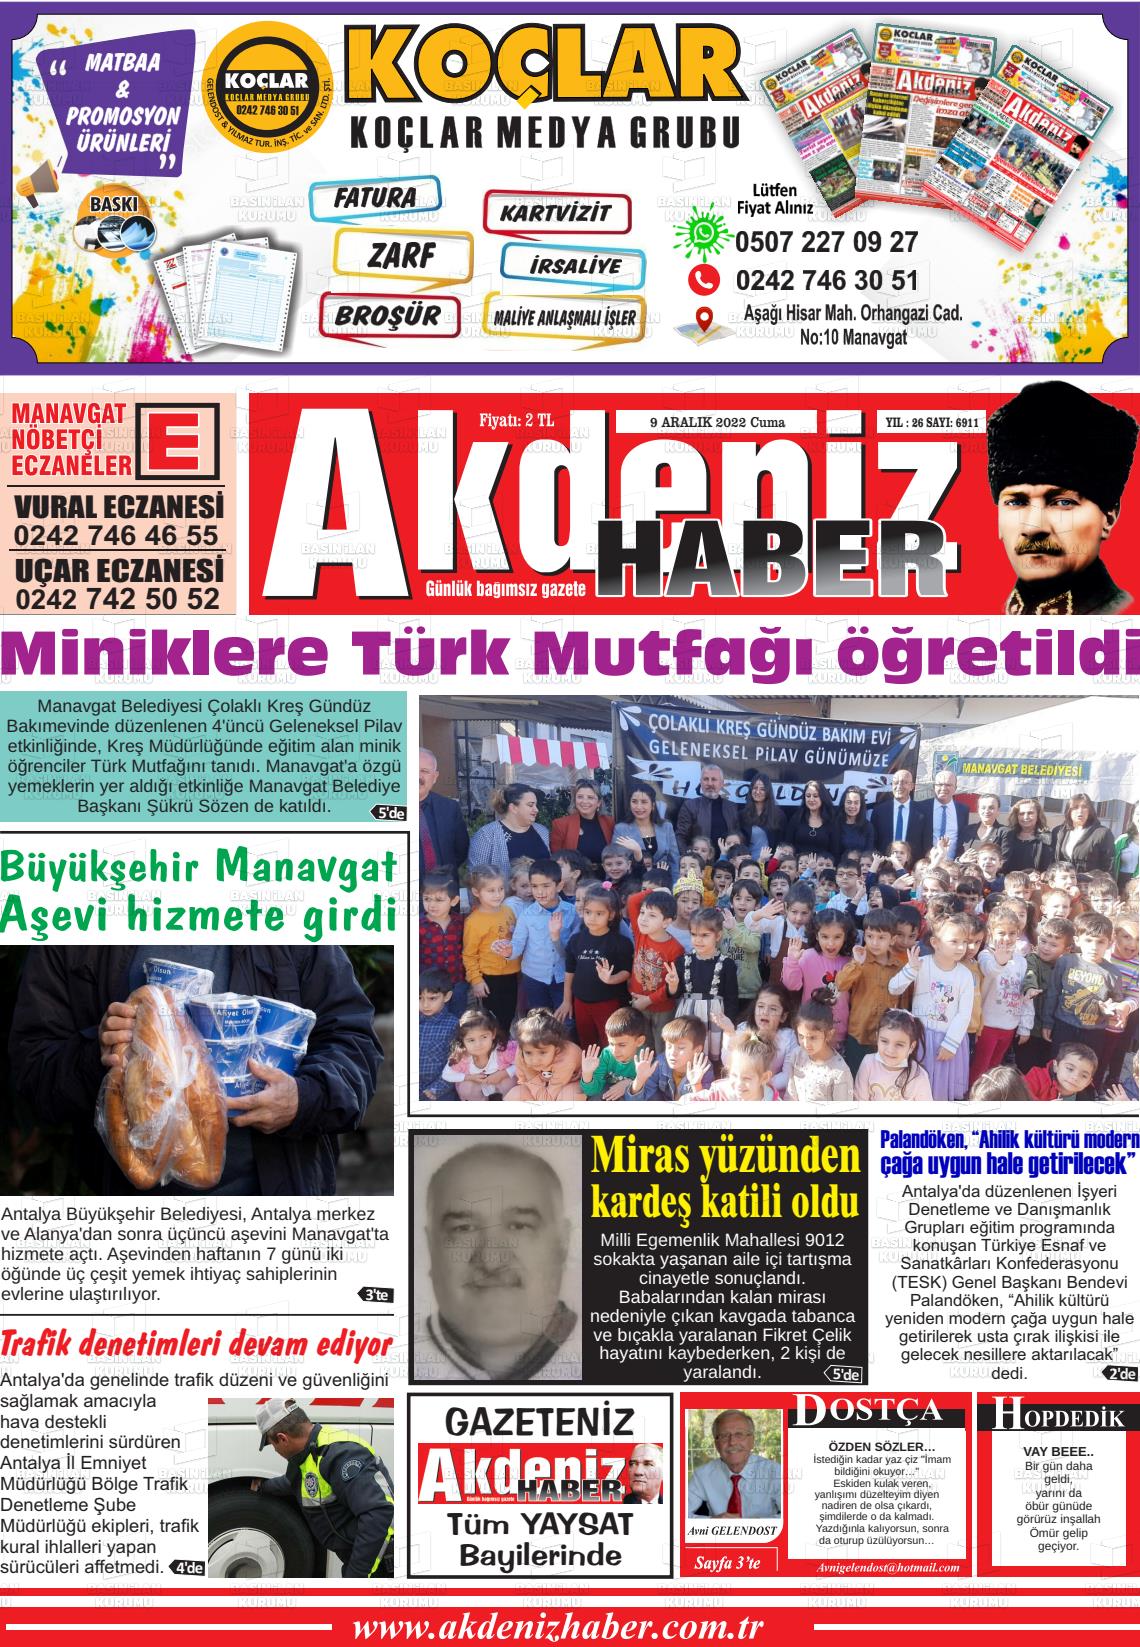 09 Aralık 2022 Akdeniz Haber Gazete Manşeti